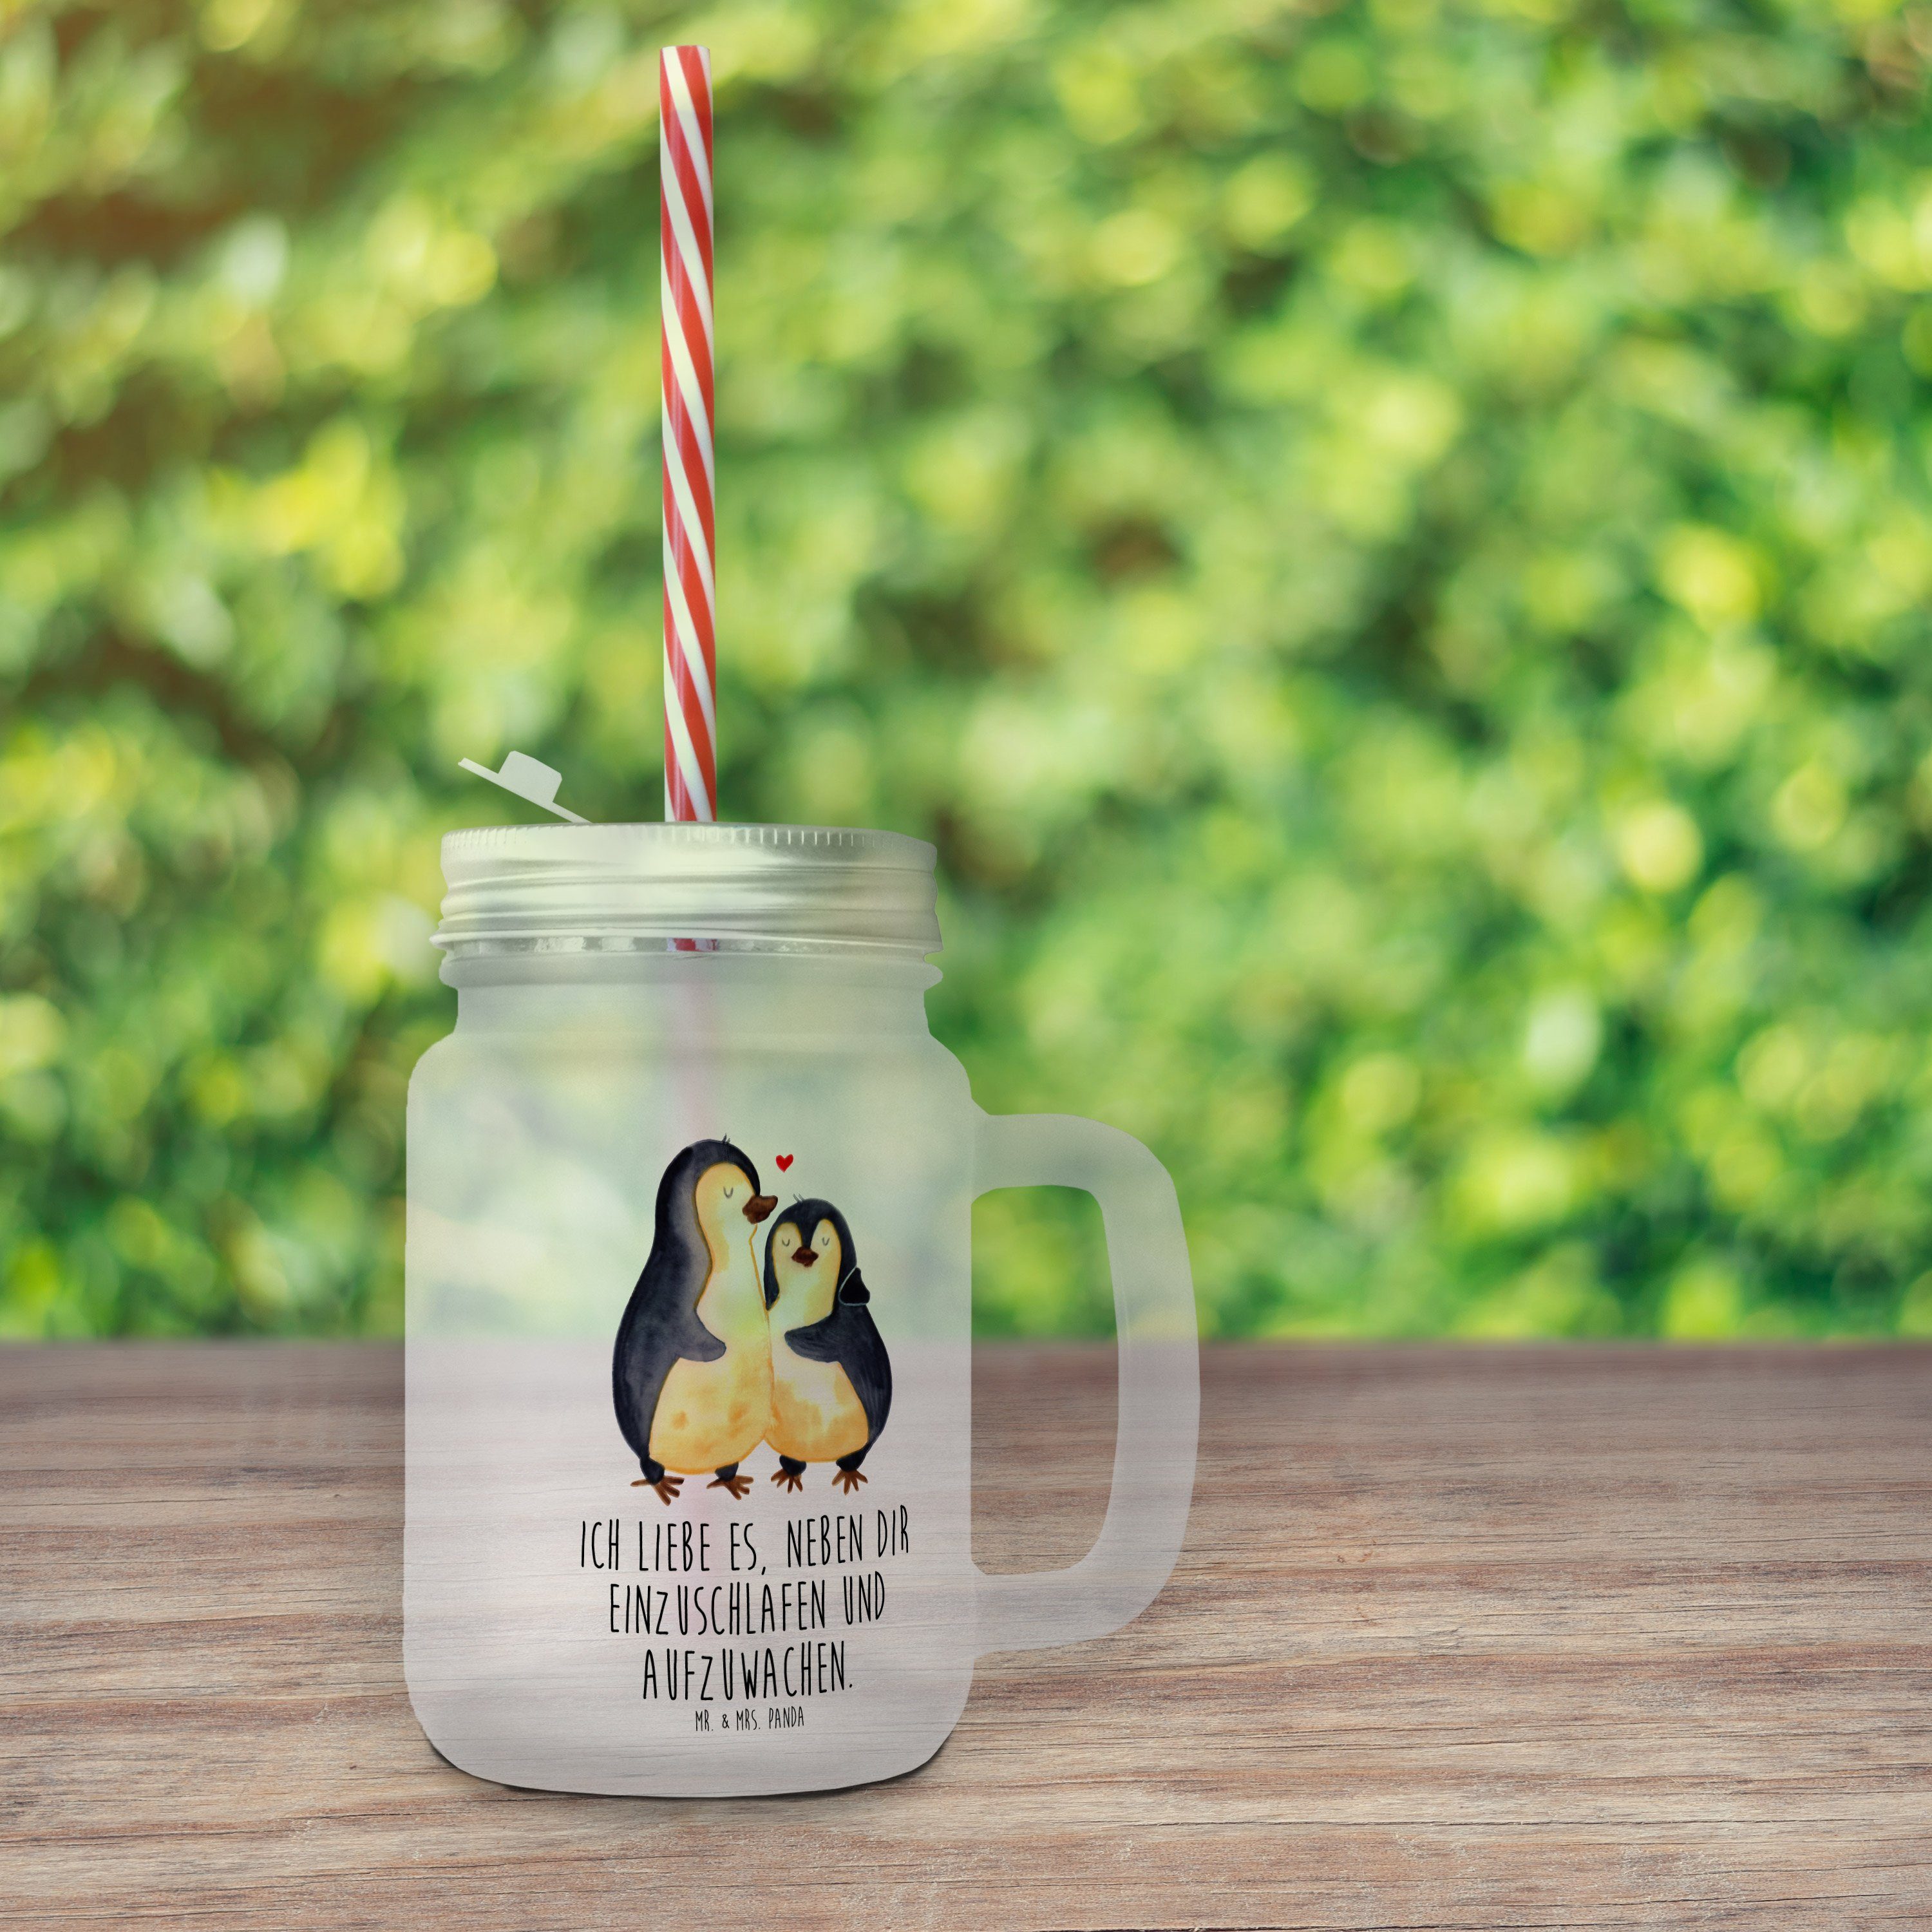 Einschlafen Hocheitstag, Pinguine - Mrs. & Panda Premium - Mr. Trinkglas, Transparent Glas Geschenk, Glas